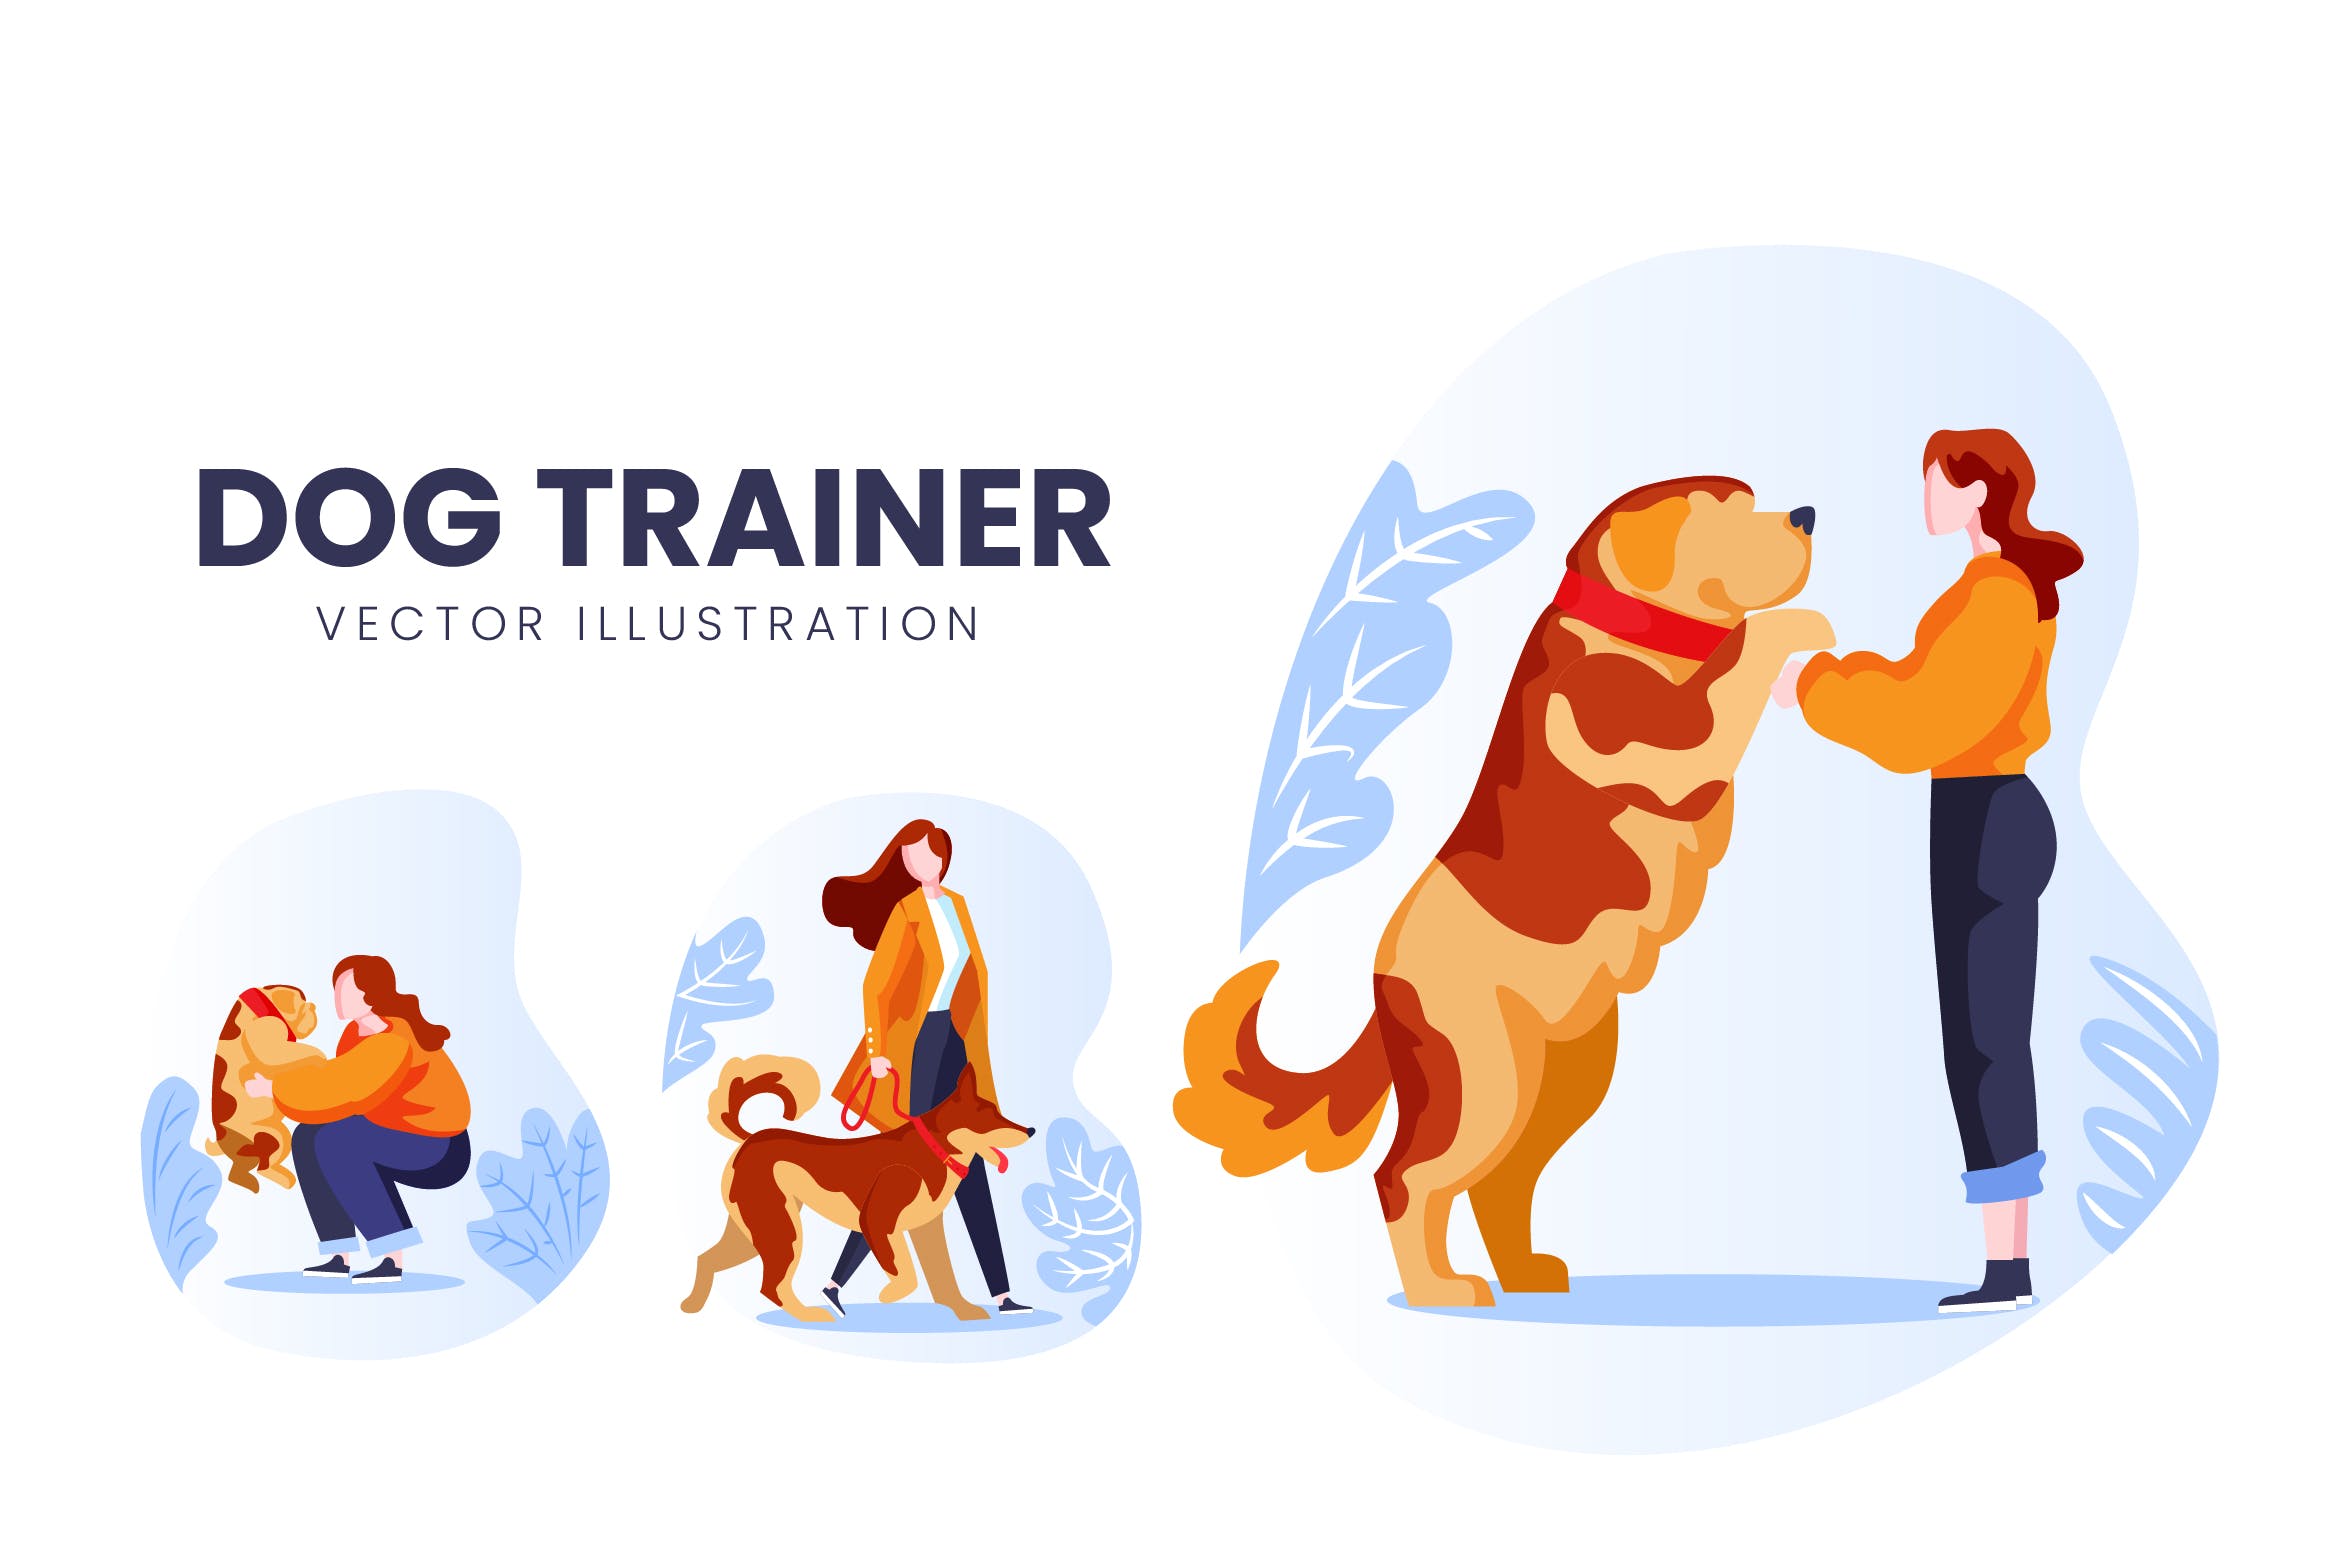 训犬员人物形象非凡图库精选手绘插画矢量素材 Dog Trainer Vector Character Set插图